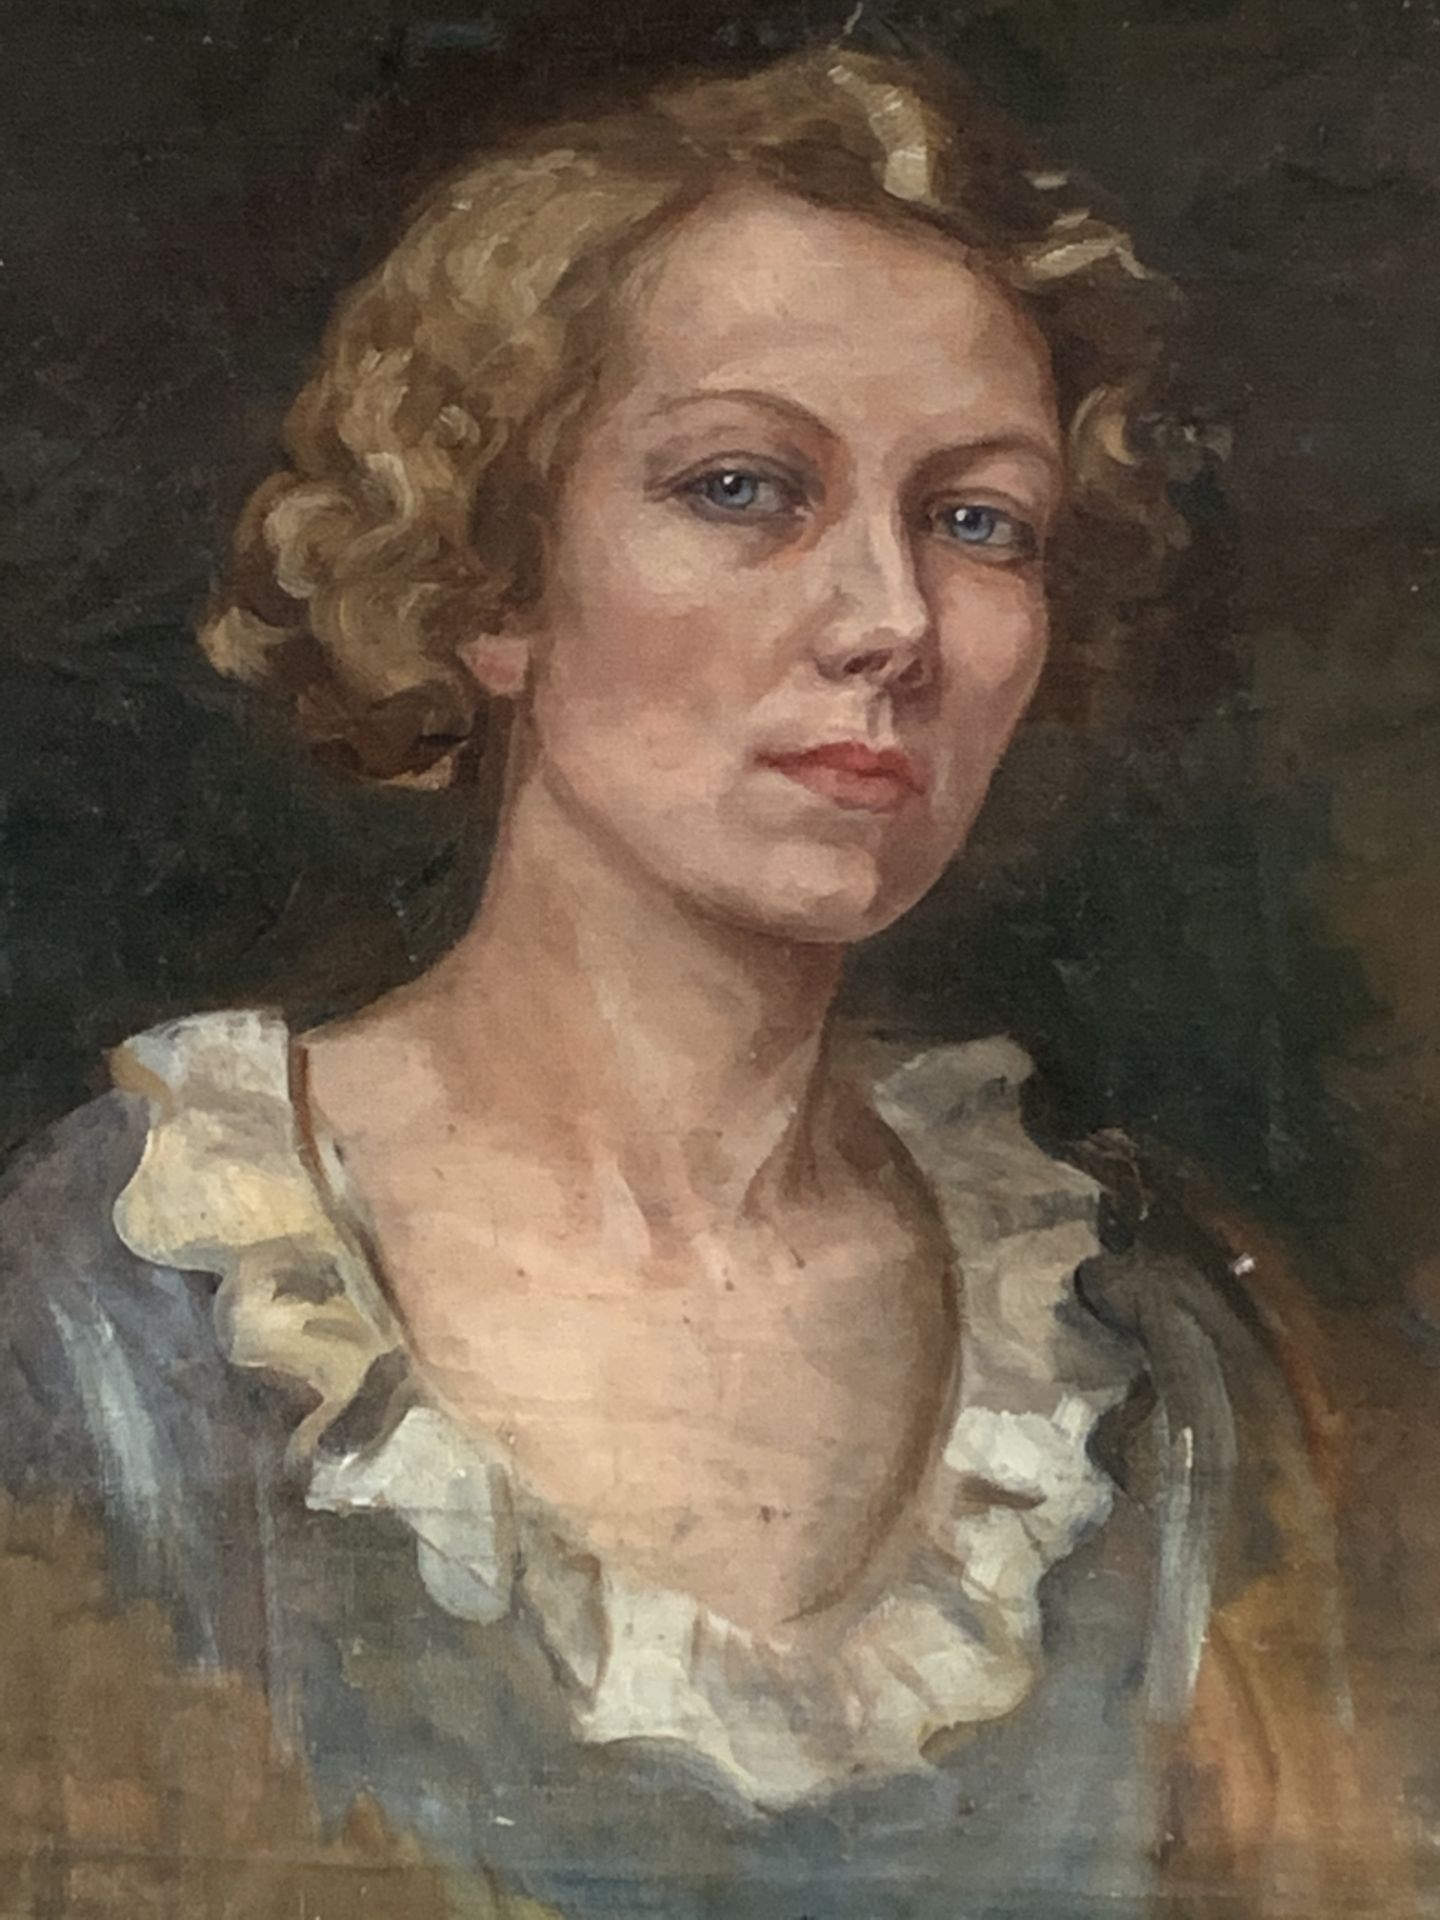 1930’s art deco portrait, oil on canvas.